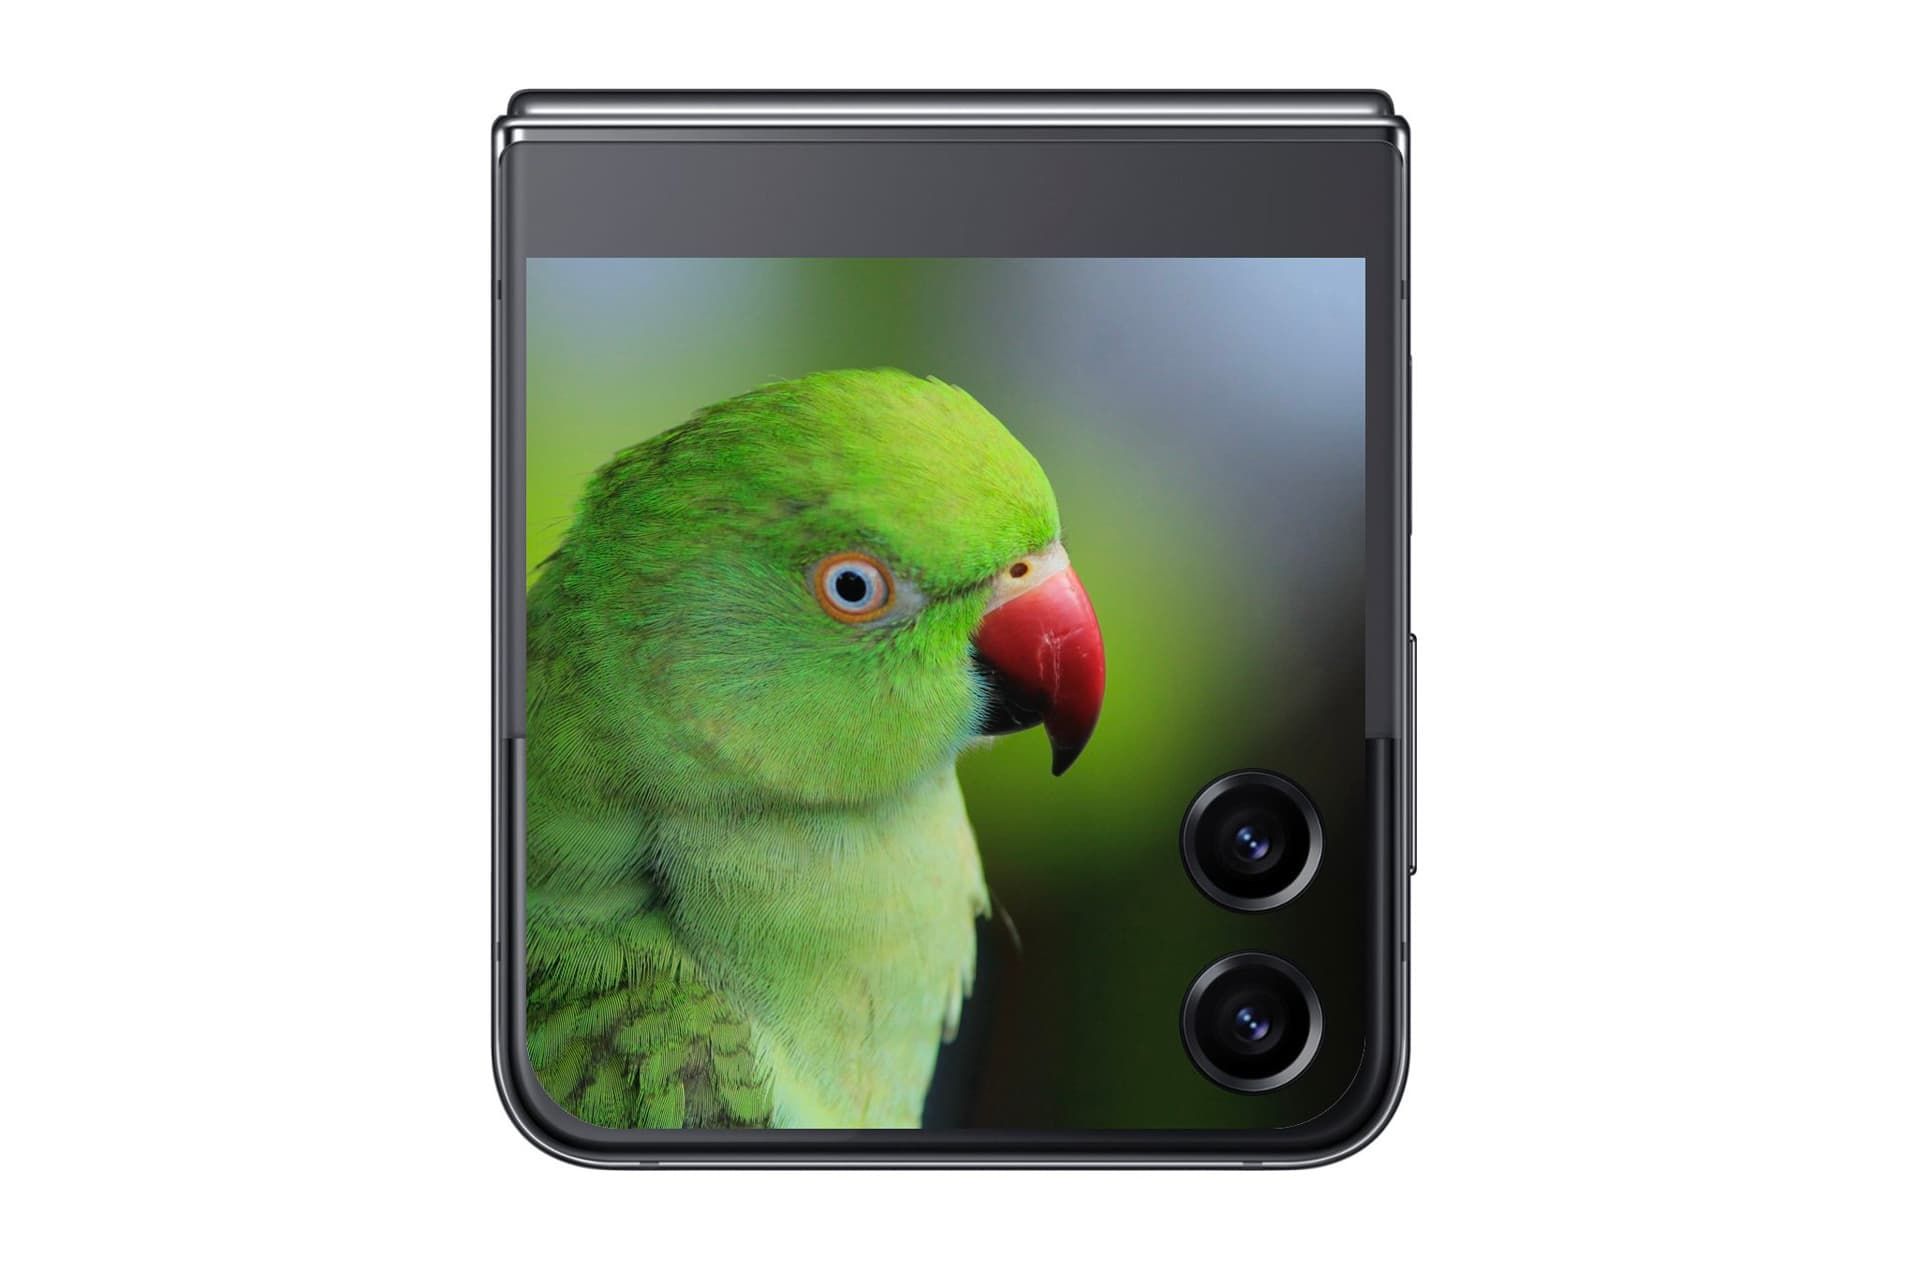 طوطی سبز در نمایشگر خارجی گلکسی زد فلیپ ۵ تصویر غیررسمی